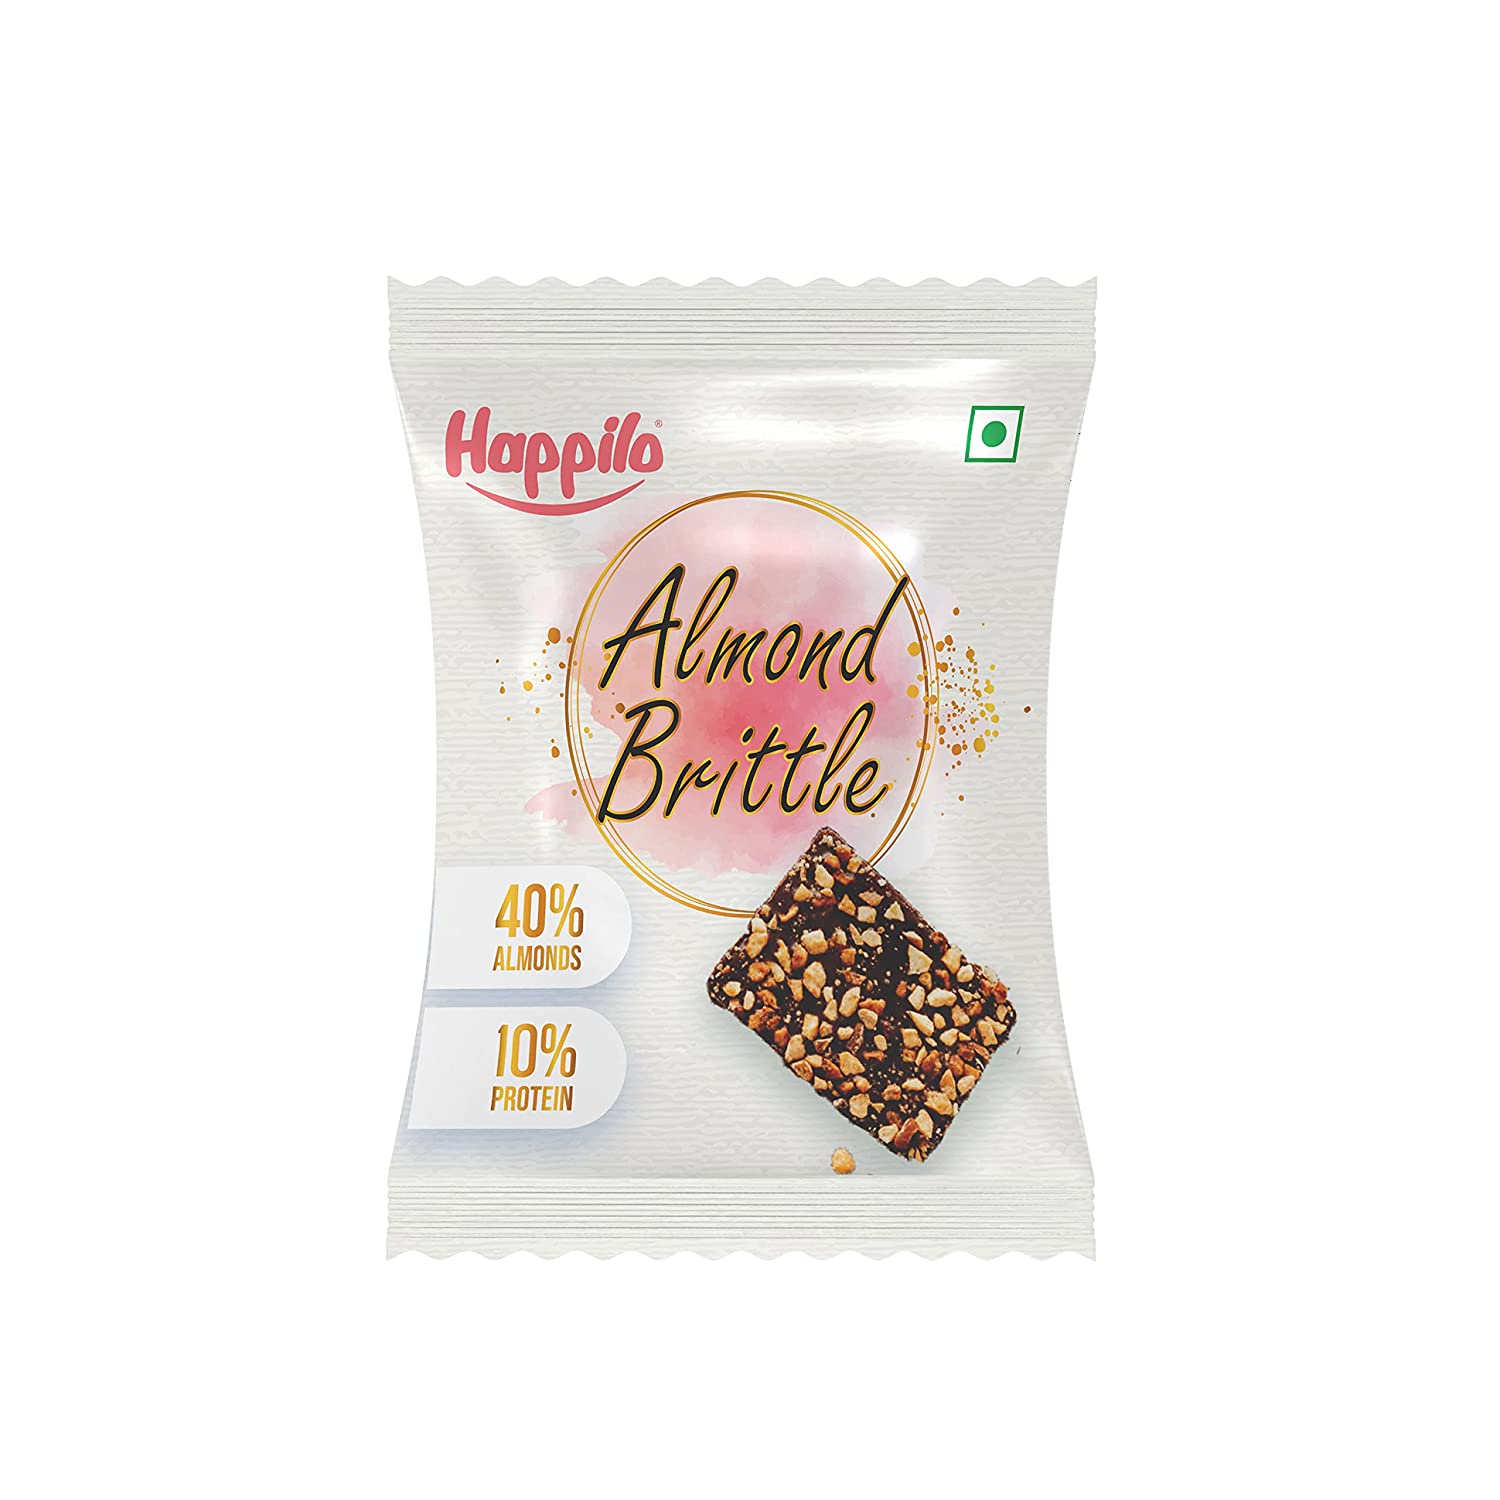 Happilo Premium Almond Brittle Gift Pack 204g (17gX12)